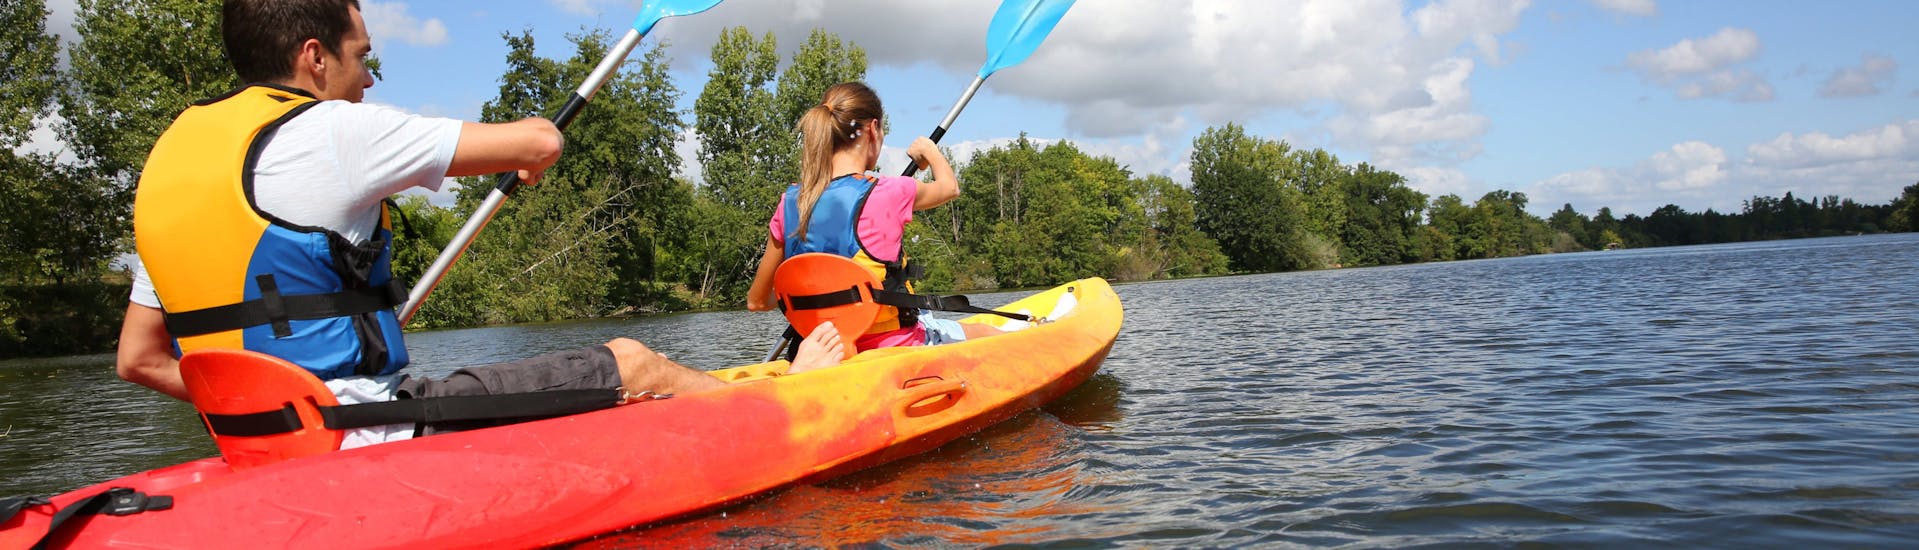 Kayak e canoa di media difficoltà a Chalonnes-sur-Loire - Loire River.